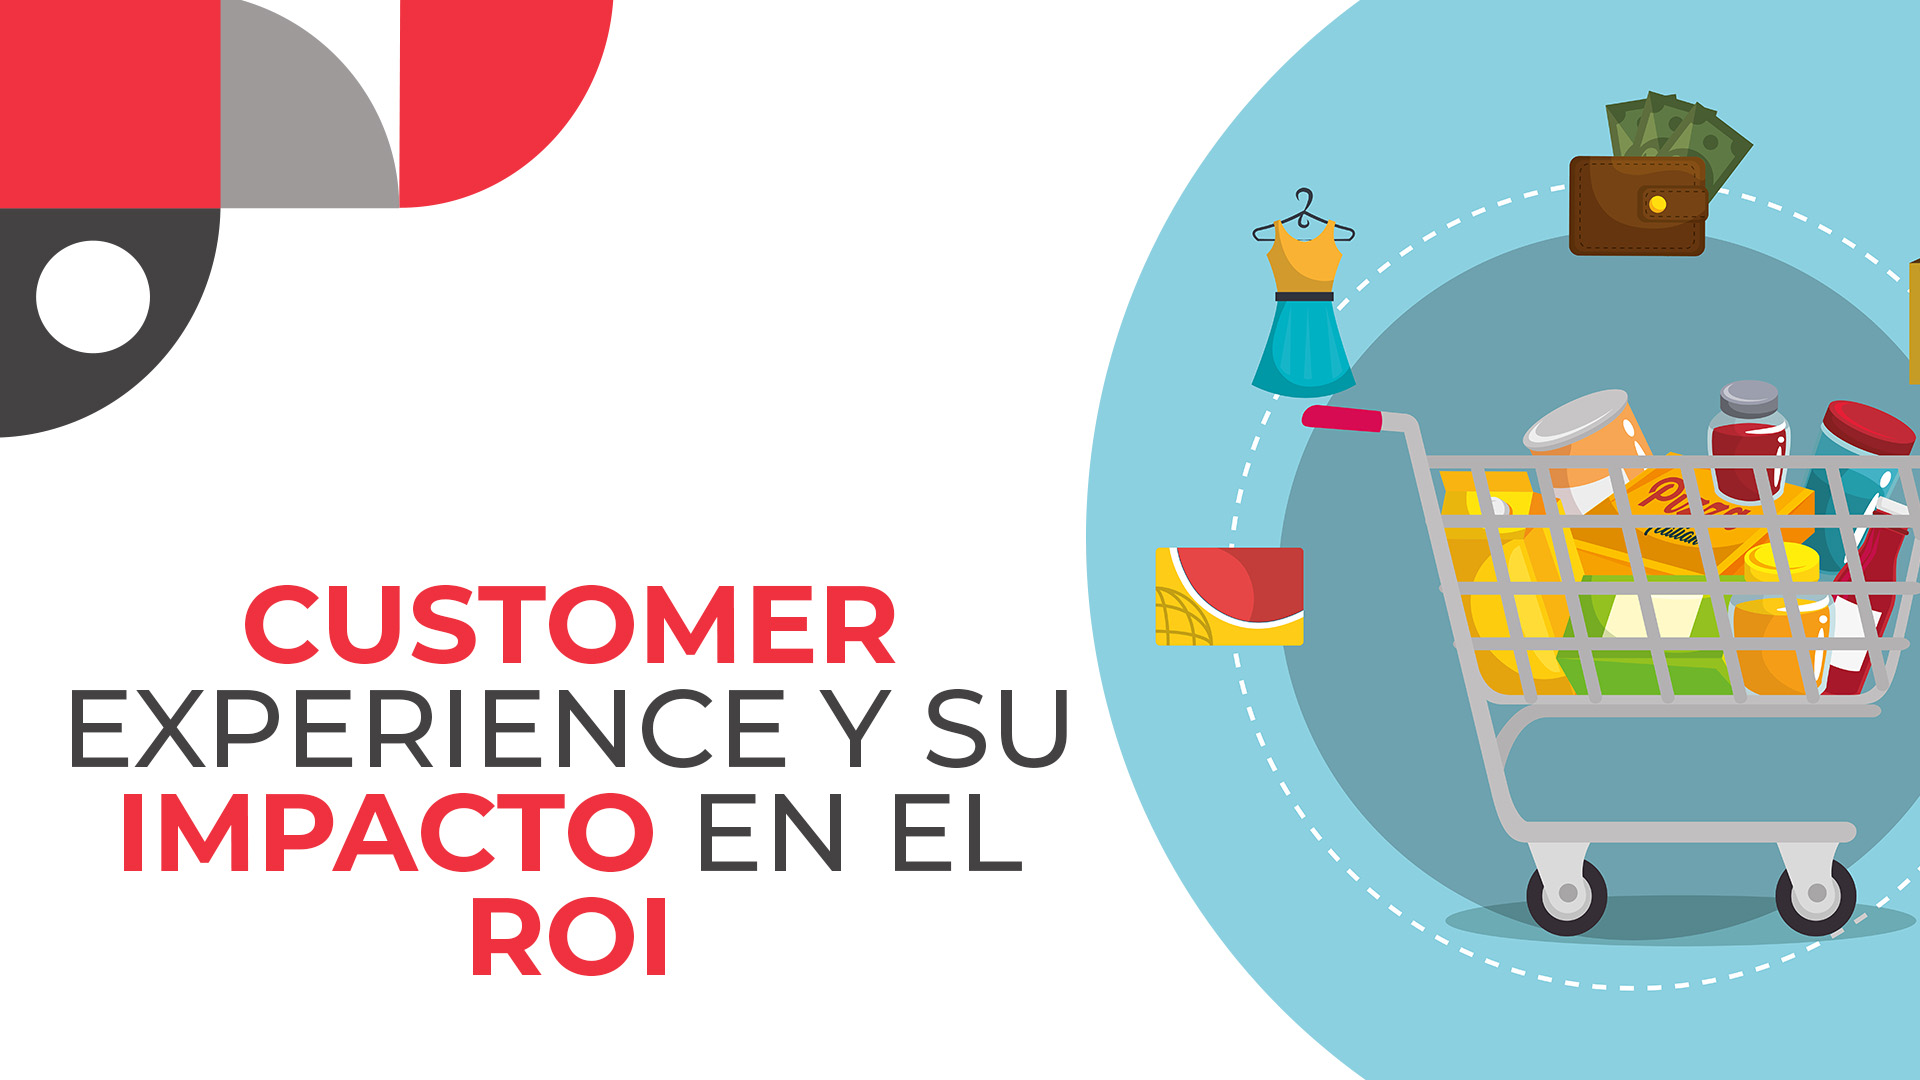 Imagen ilustrativa del curso de Customer experience y su impacto en el ROI